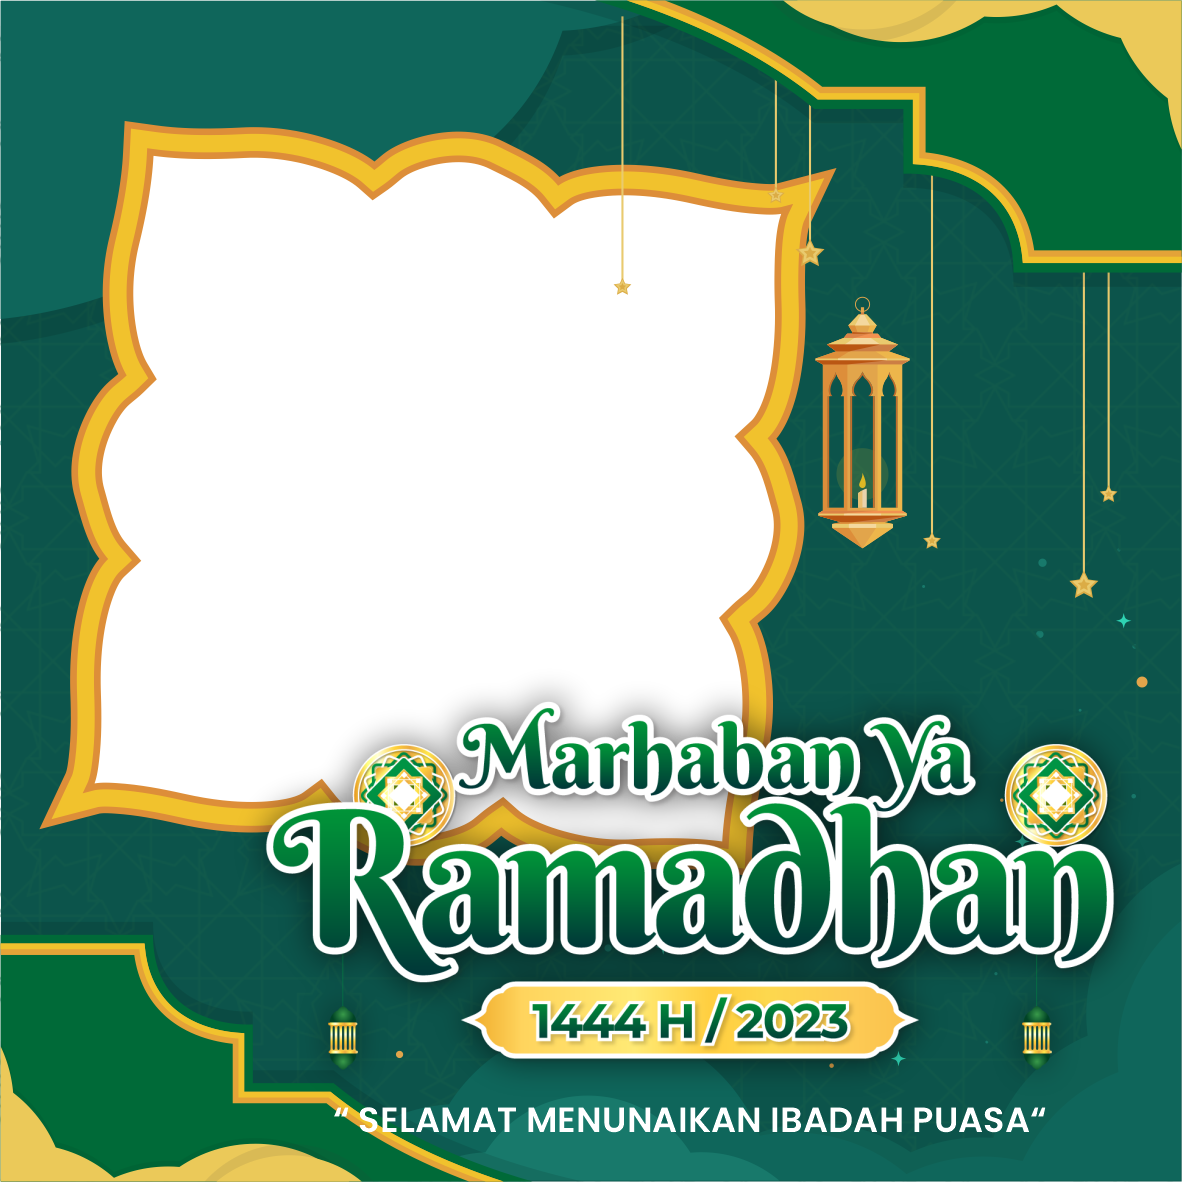 twibbon marhaban ya ramadhan 2023